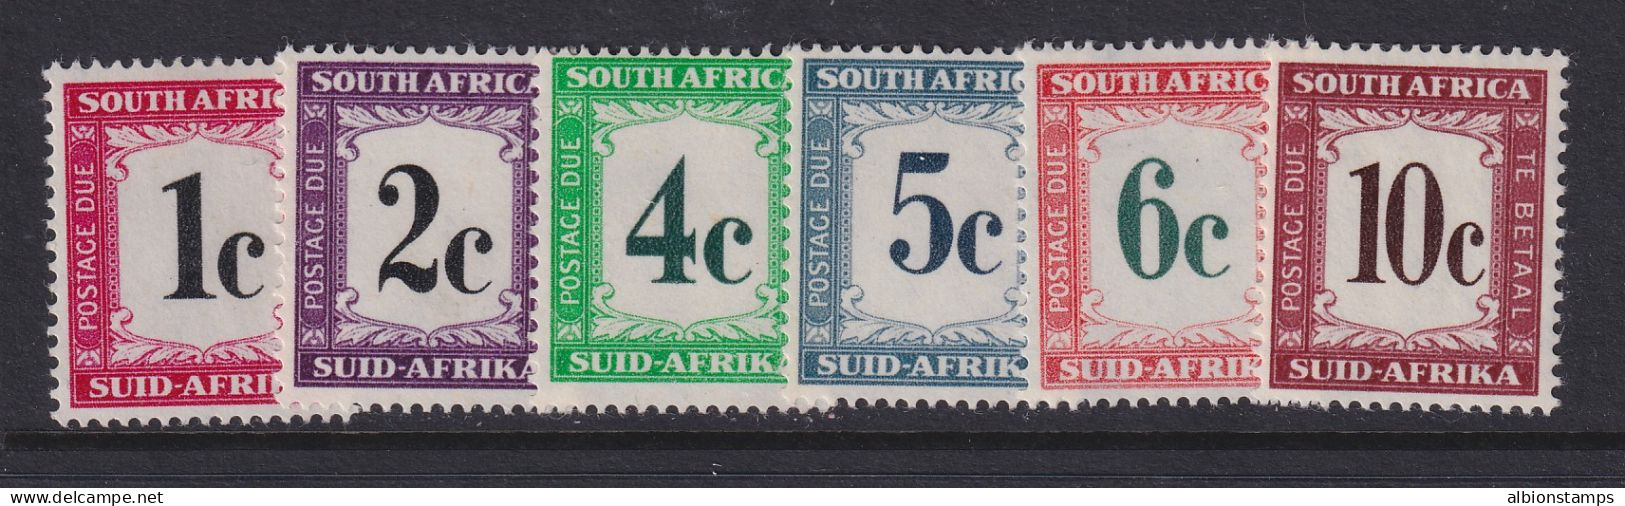 South Africa, Scott J46-J51 (SG D45-D50), MNH - Timbres-taxe